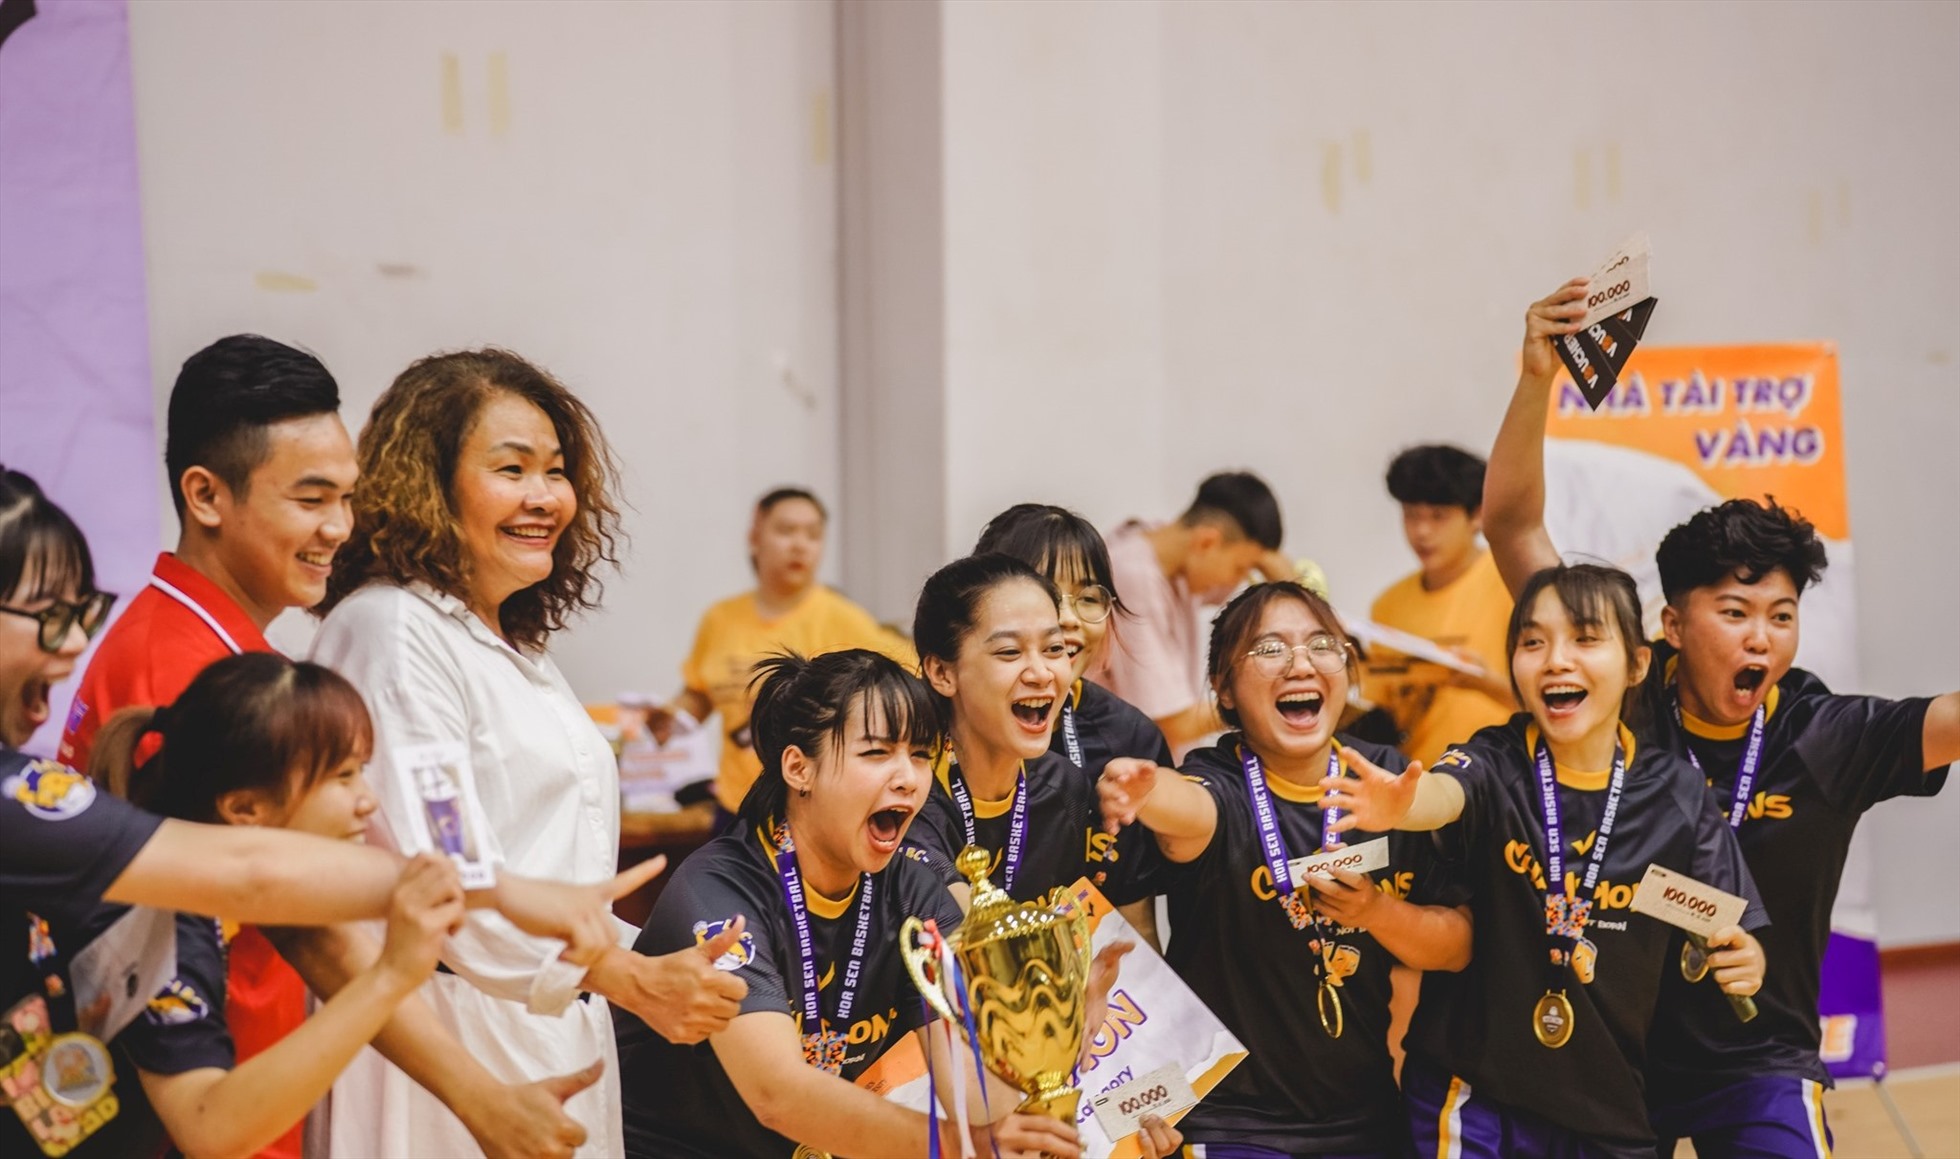 Đội bóng rổ nữ LBC của Đại học Hoa Sen giành ngôi vô địch ở bảng nữ. Ảnh: Y.N